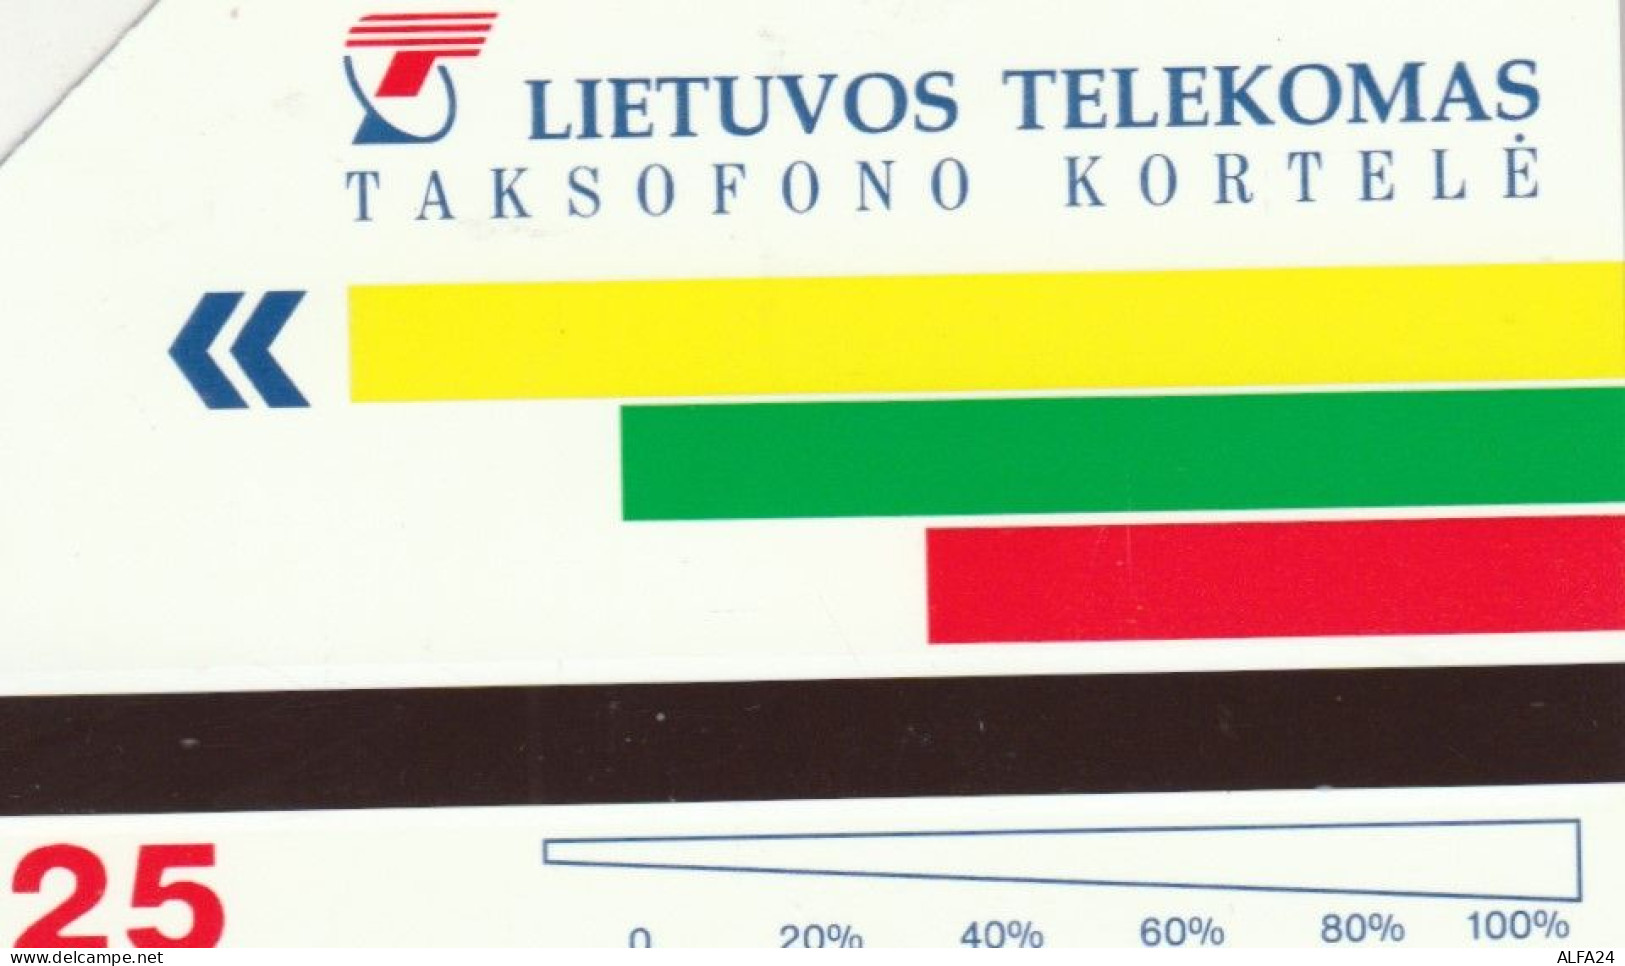 PHONE CARD LITUANIA URMET (M.13.3 - Lithuania